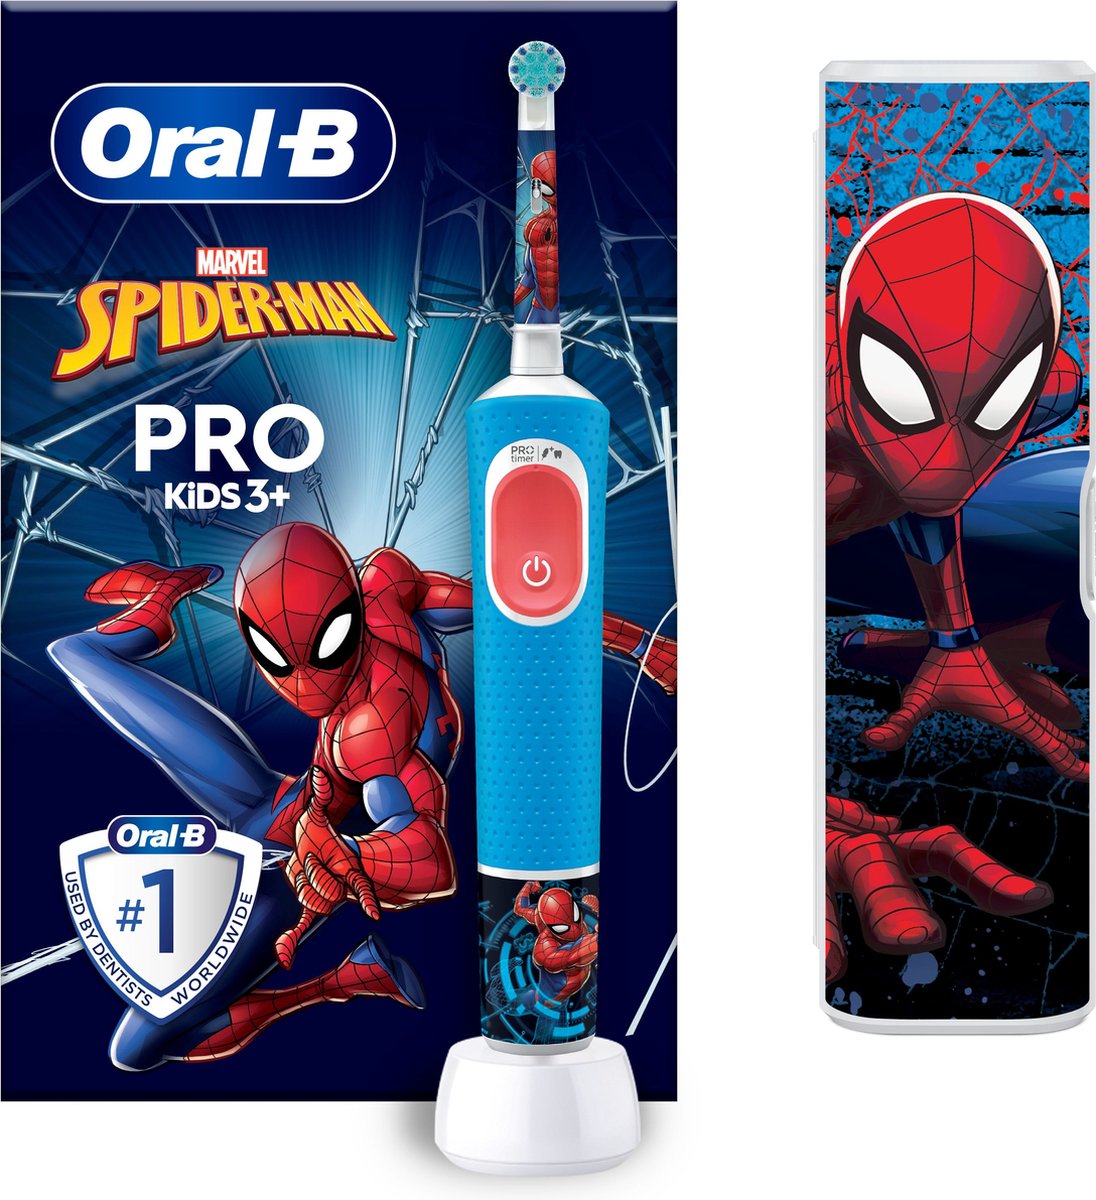 Oral-B Pro Kids Elektrische Tandenborstel - Spiderman Editie inclusief Reisetui - Voor Kinderen Vana